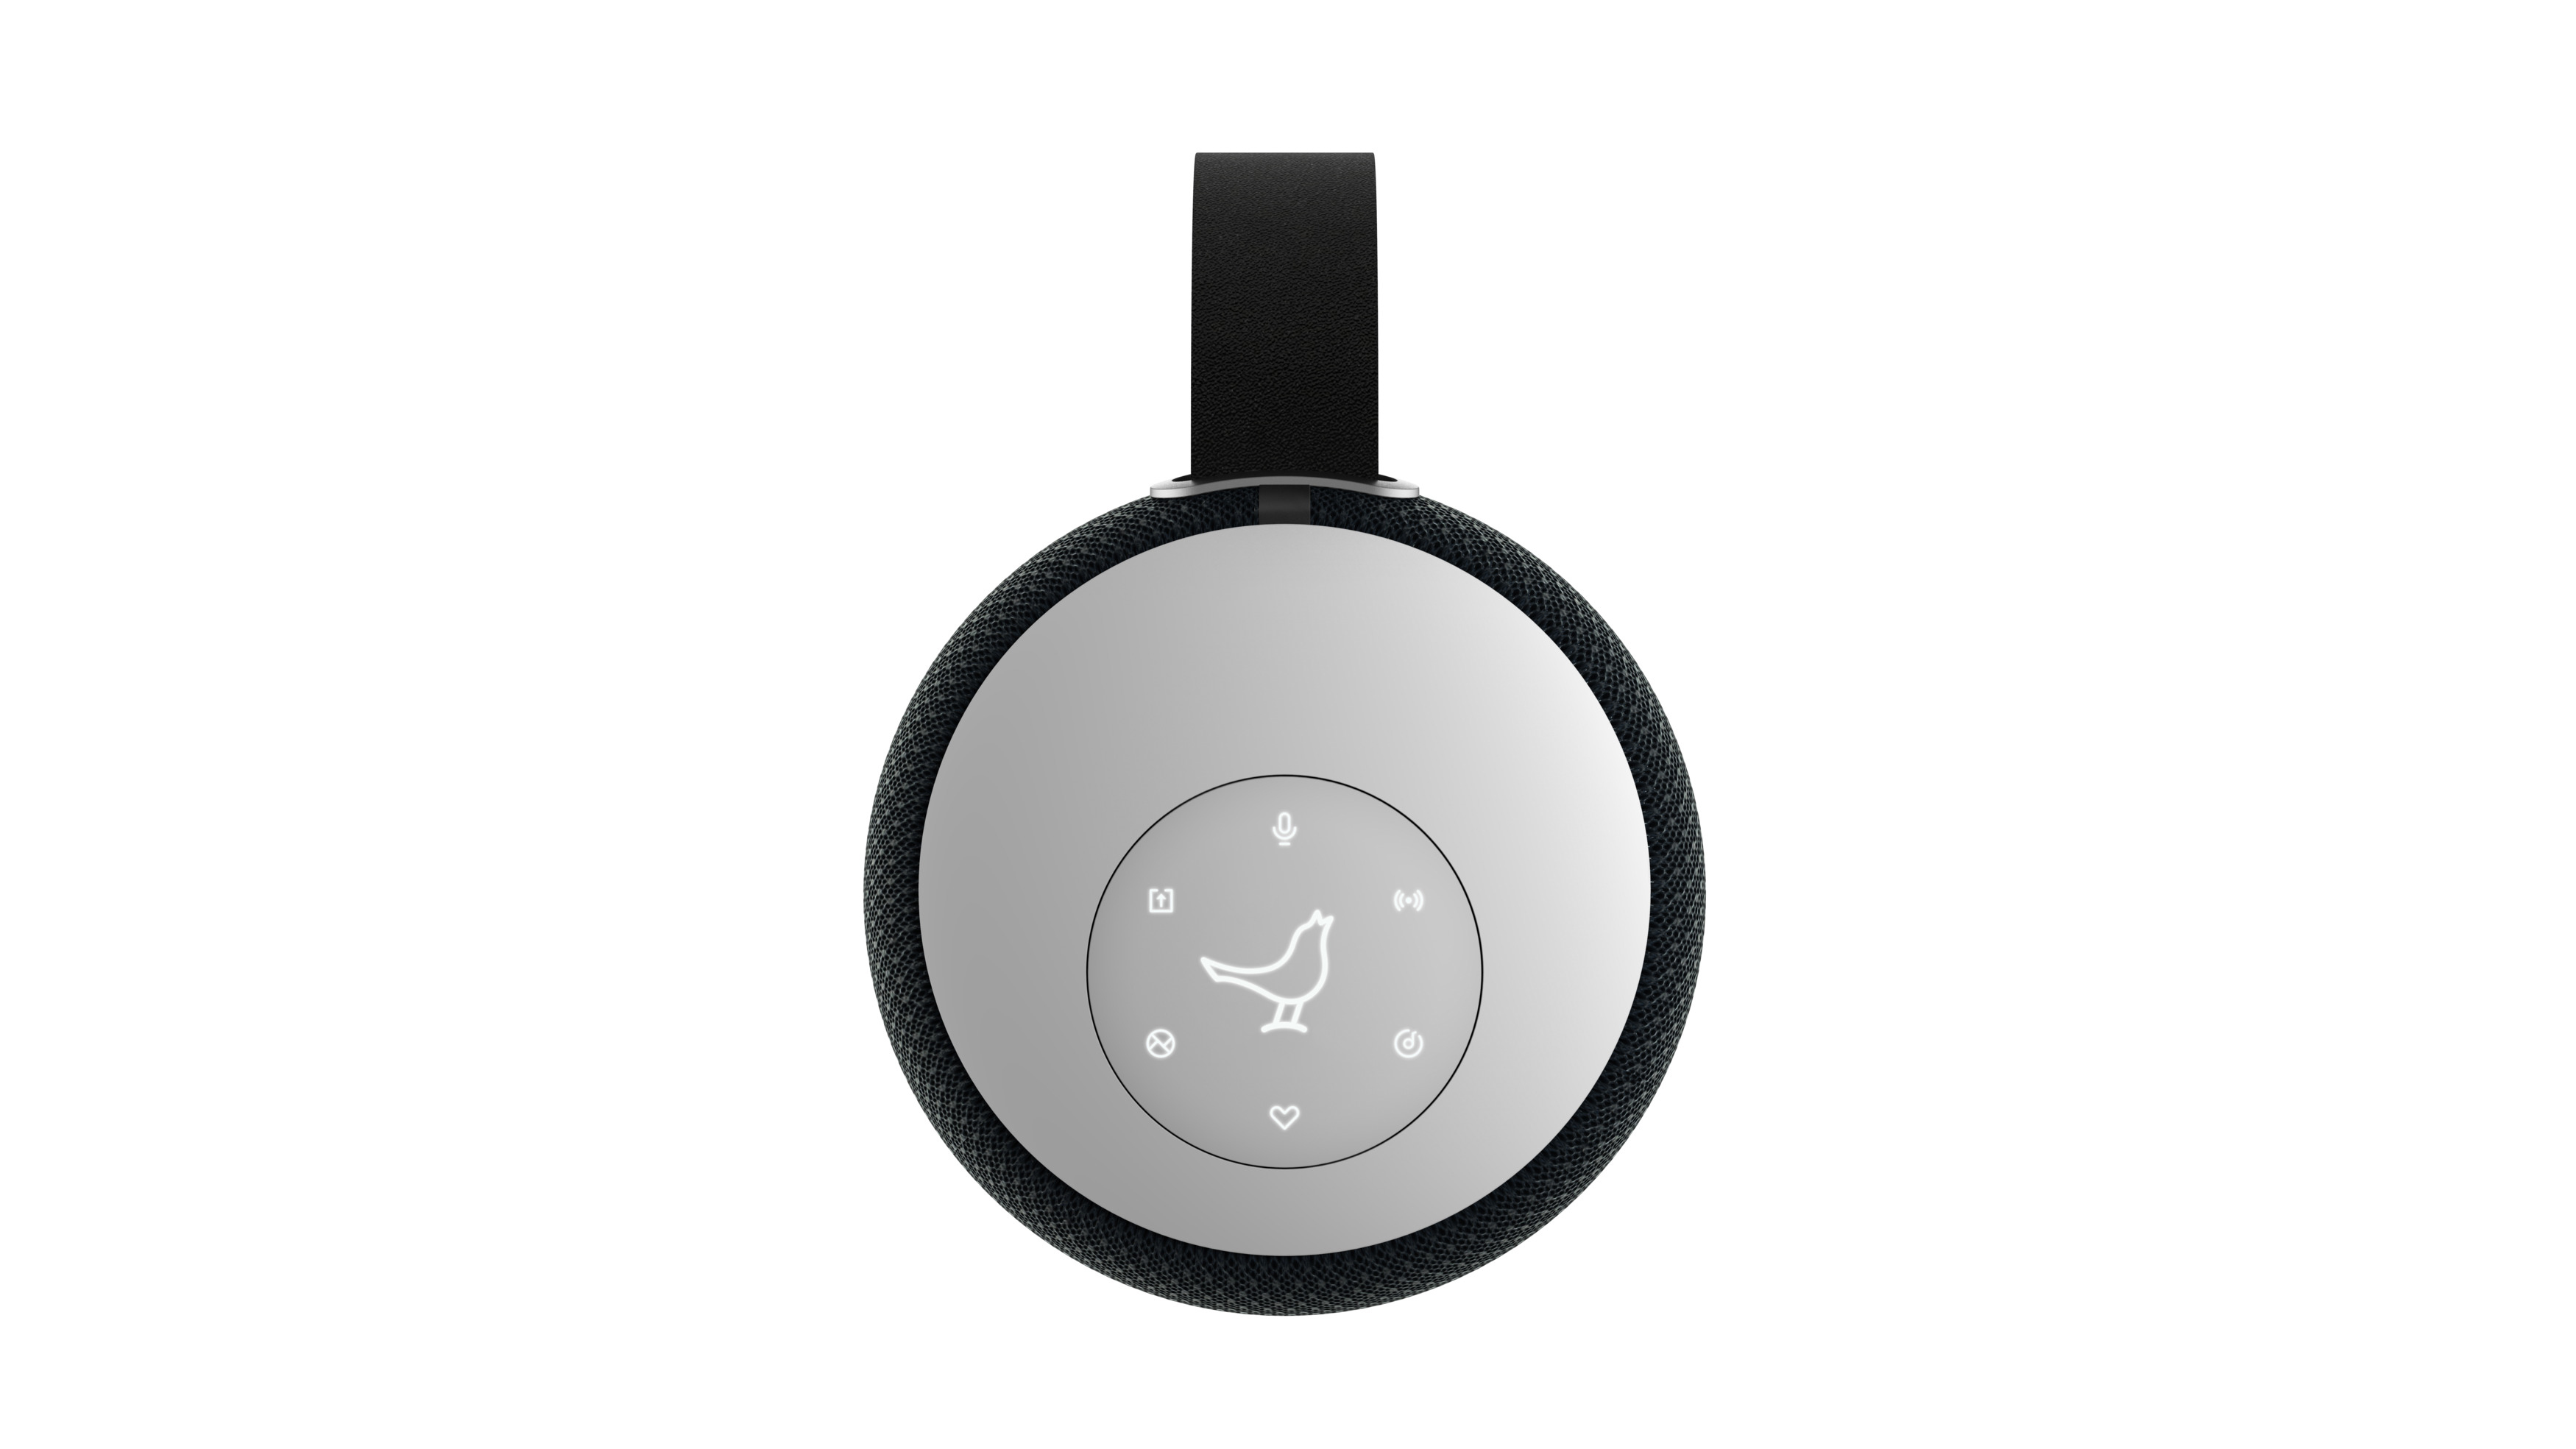 LIBRATONE ZIPP Mini 2 Lautsprecher Bluetooth, Schwarz App-steuerbar